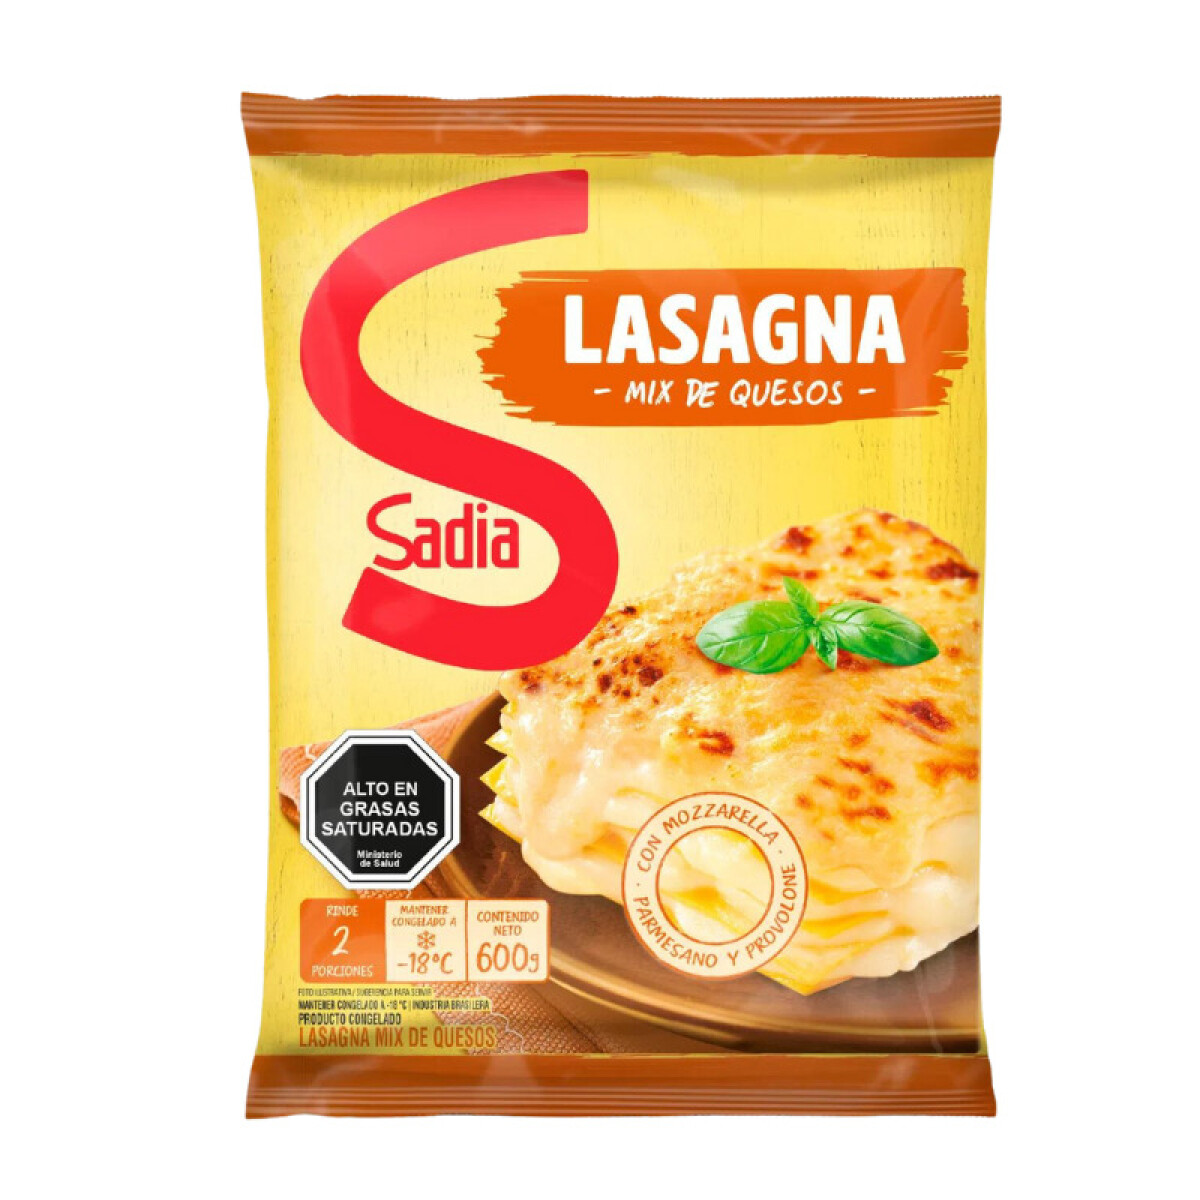 Lasagna mix de quesos Sadia - 600 grs 